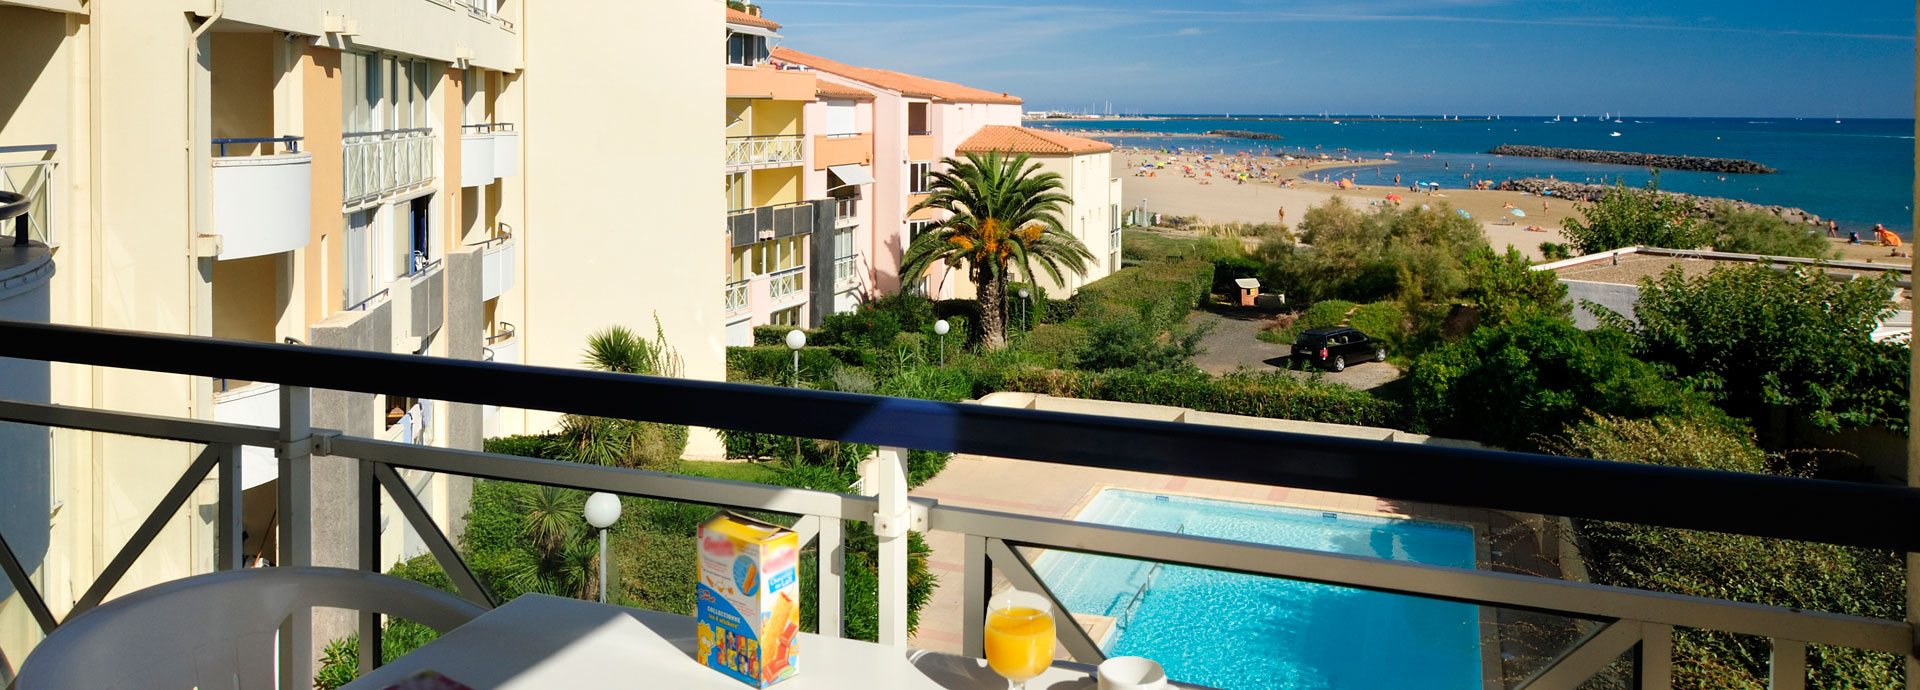 affitto case vacanza a Cap d'Agde : residence Savanna Beach